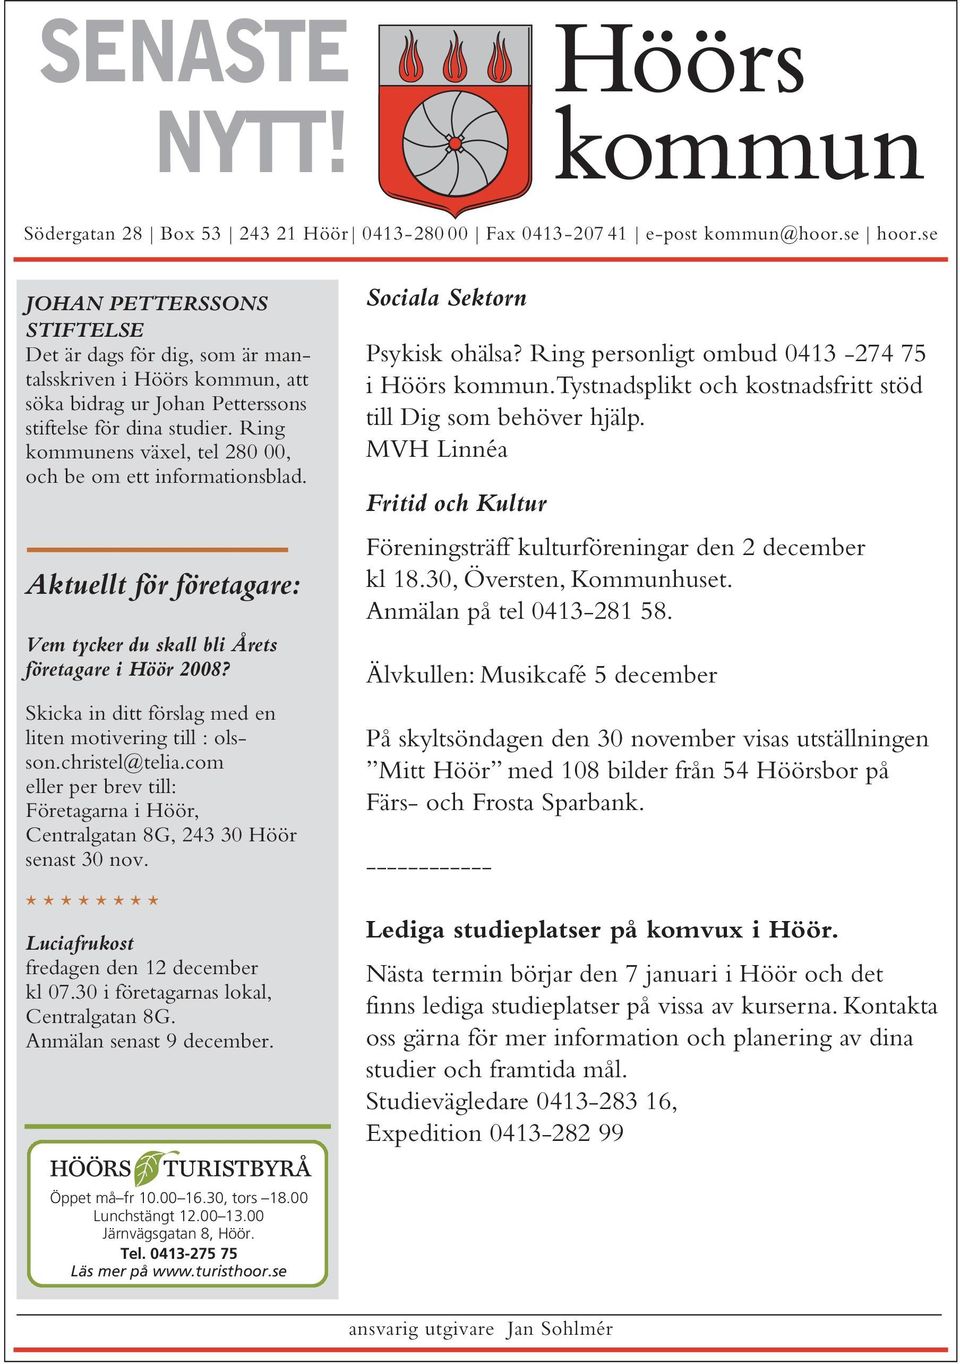 Ring kommunens växel, tel 280 00, och be om ett informationsblad. Aktuellt för företagare: Vem tycker du skall bli Årets företagare i Höör 2008?